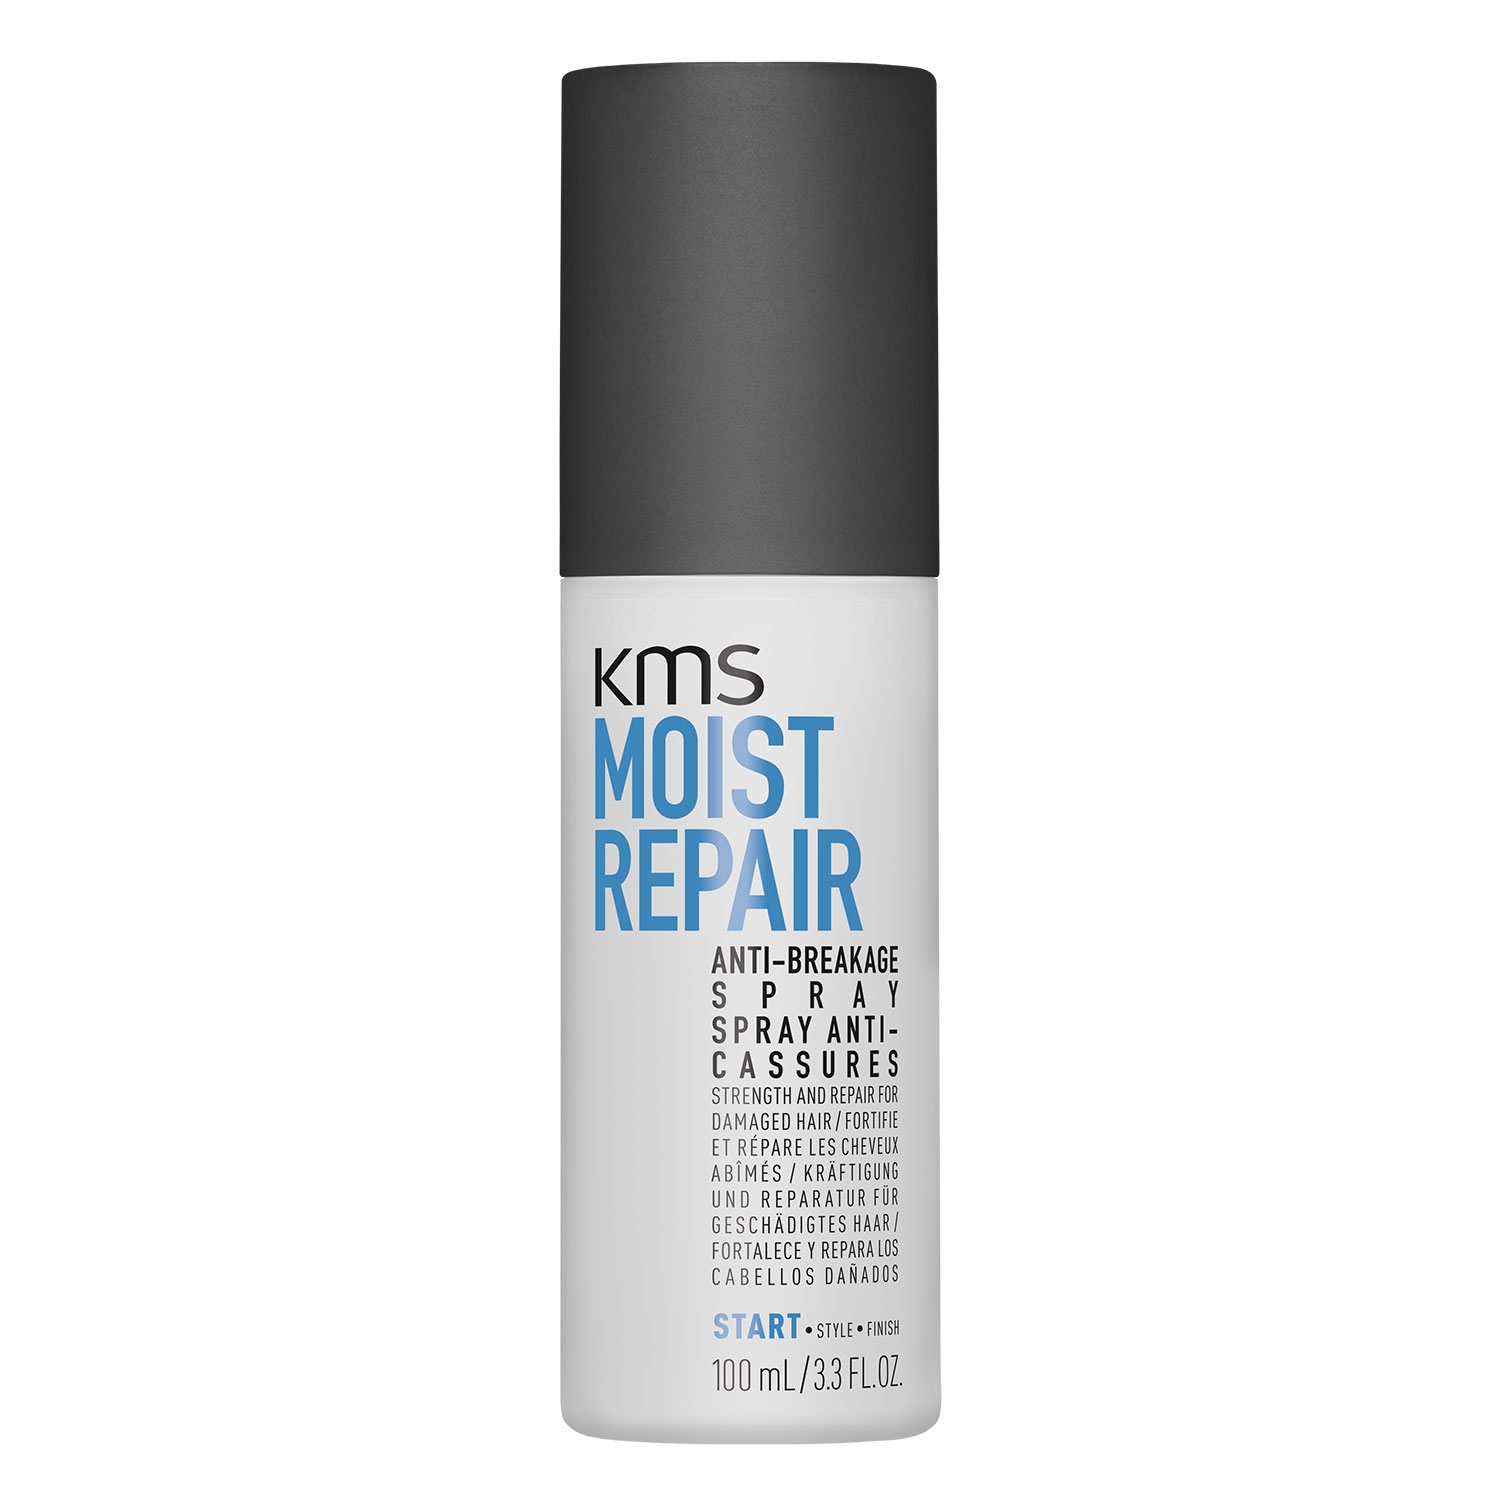 Produktbild von Moist Repair - Anti-Breakage Spray